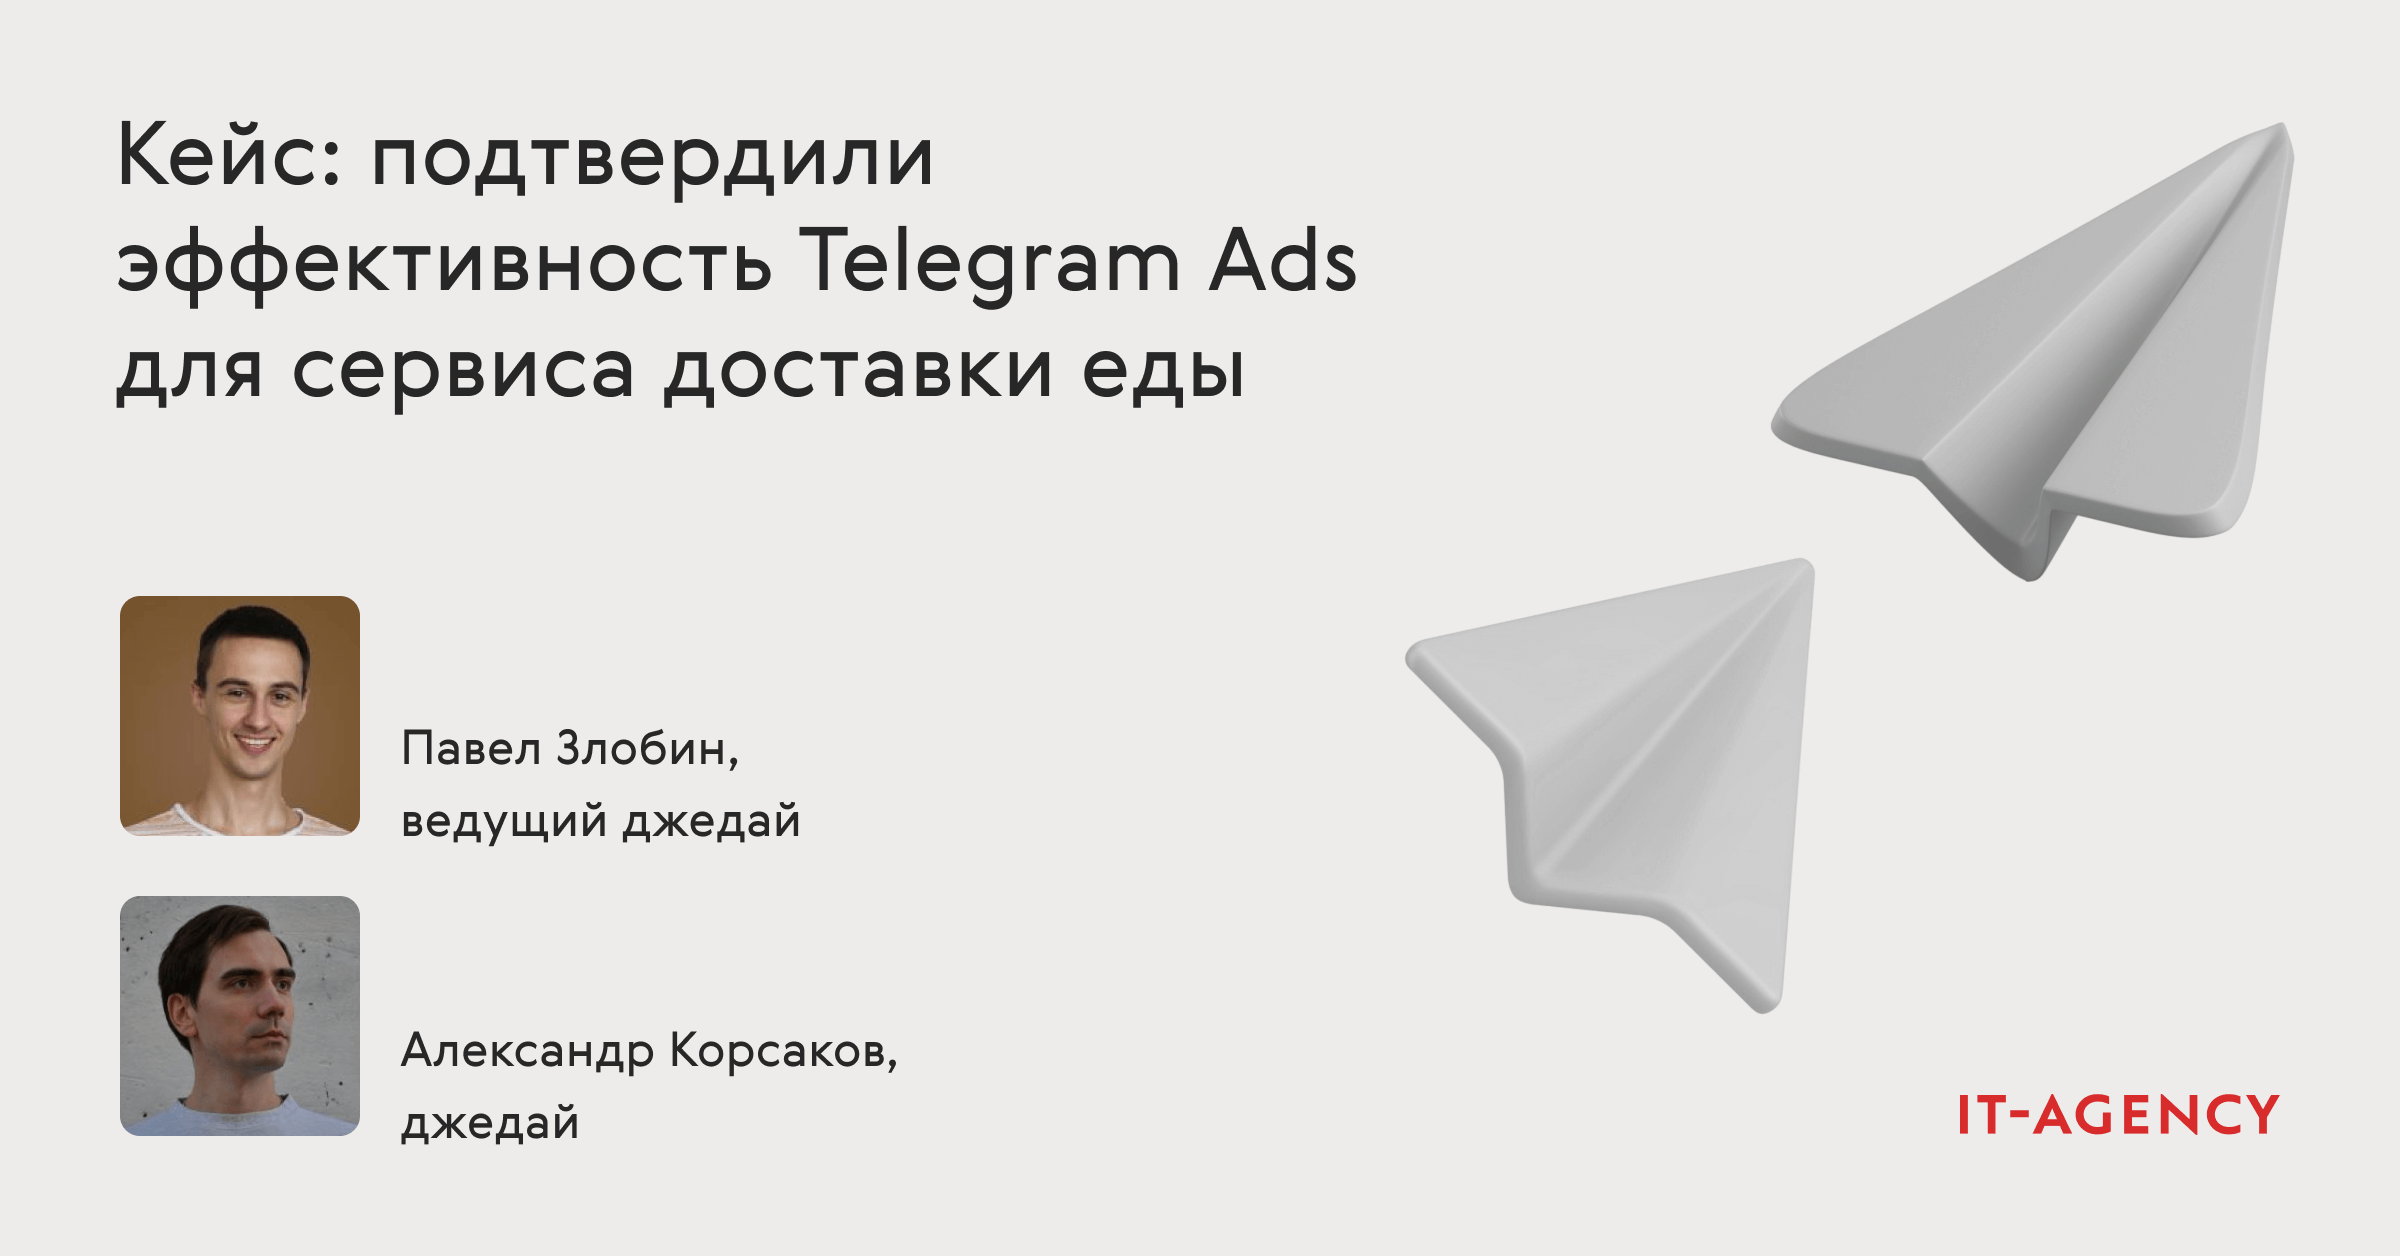 Кейс: подтвердили эффективность Telegram Ads для сервиса доставки еды